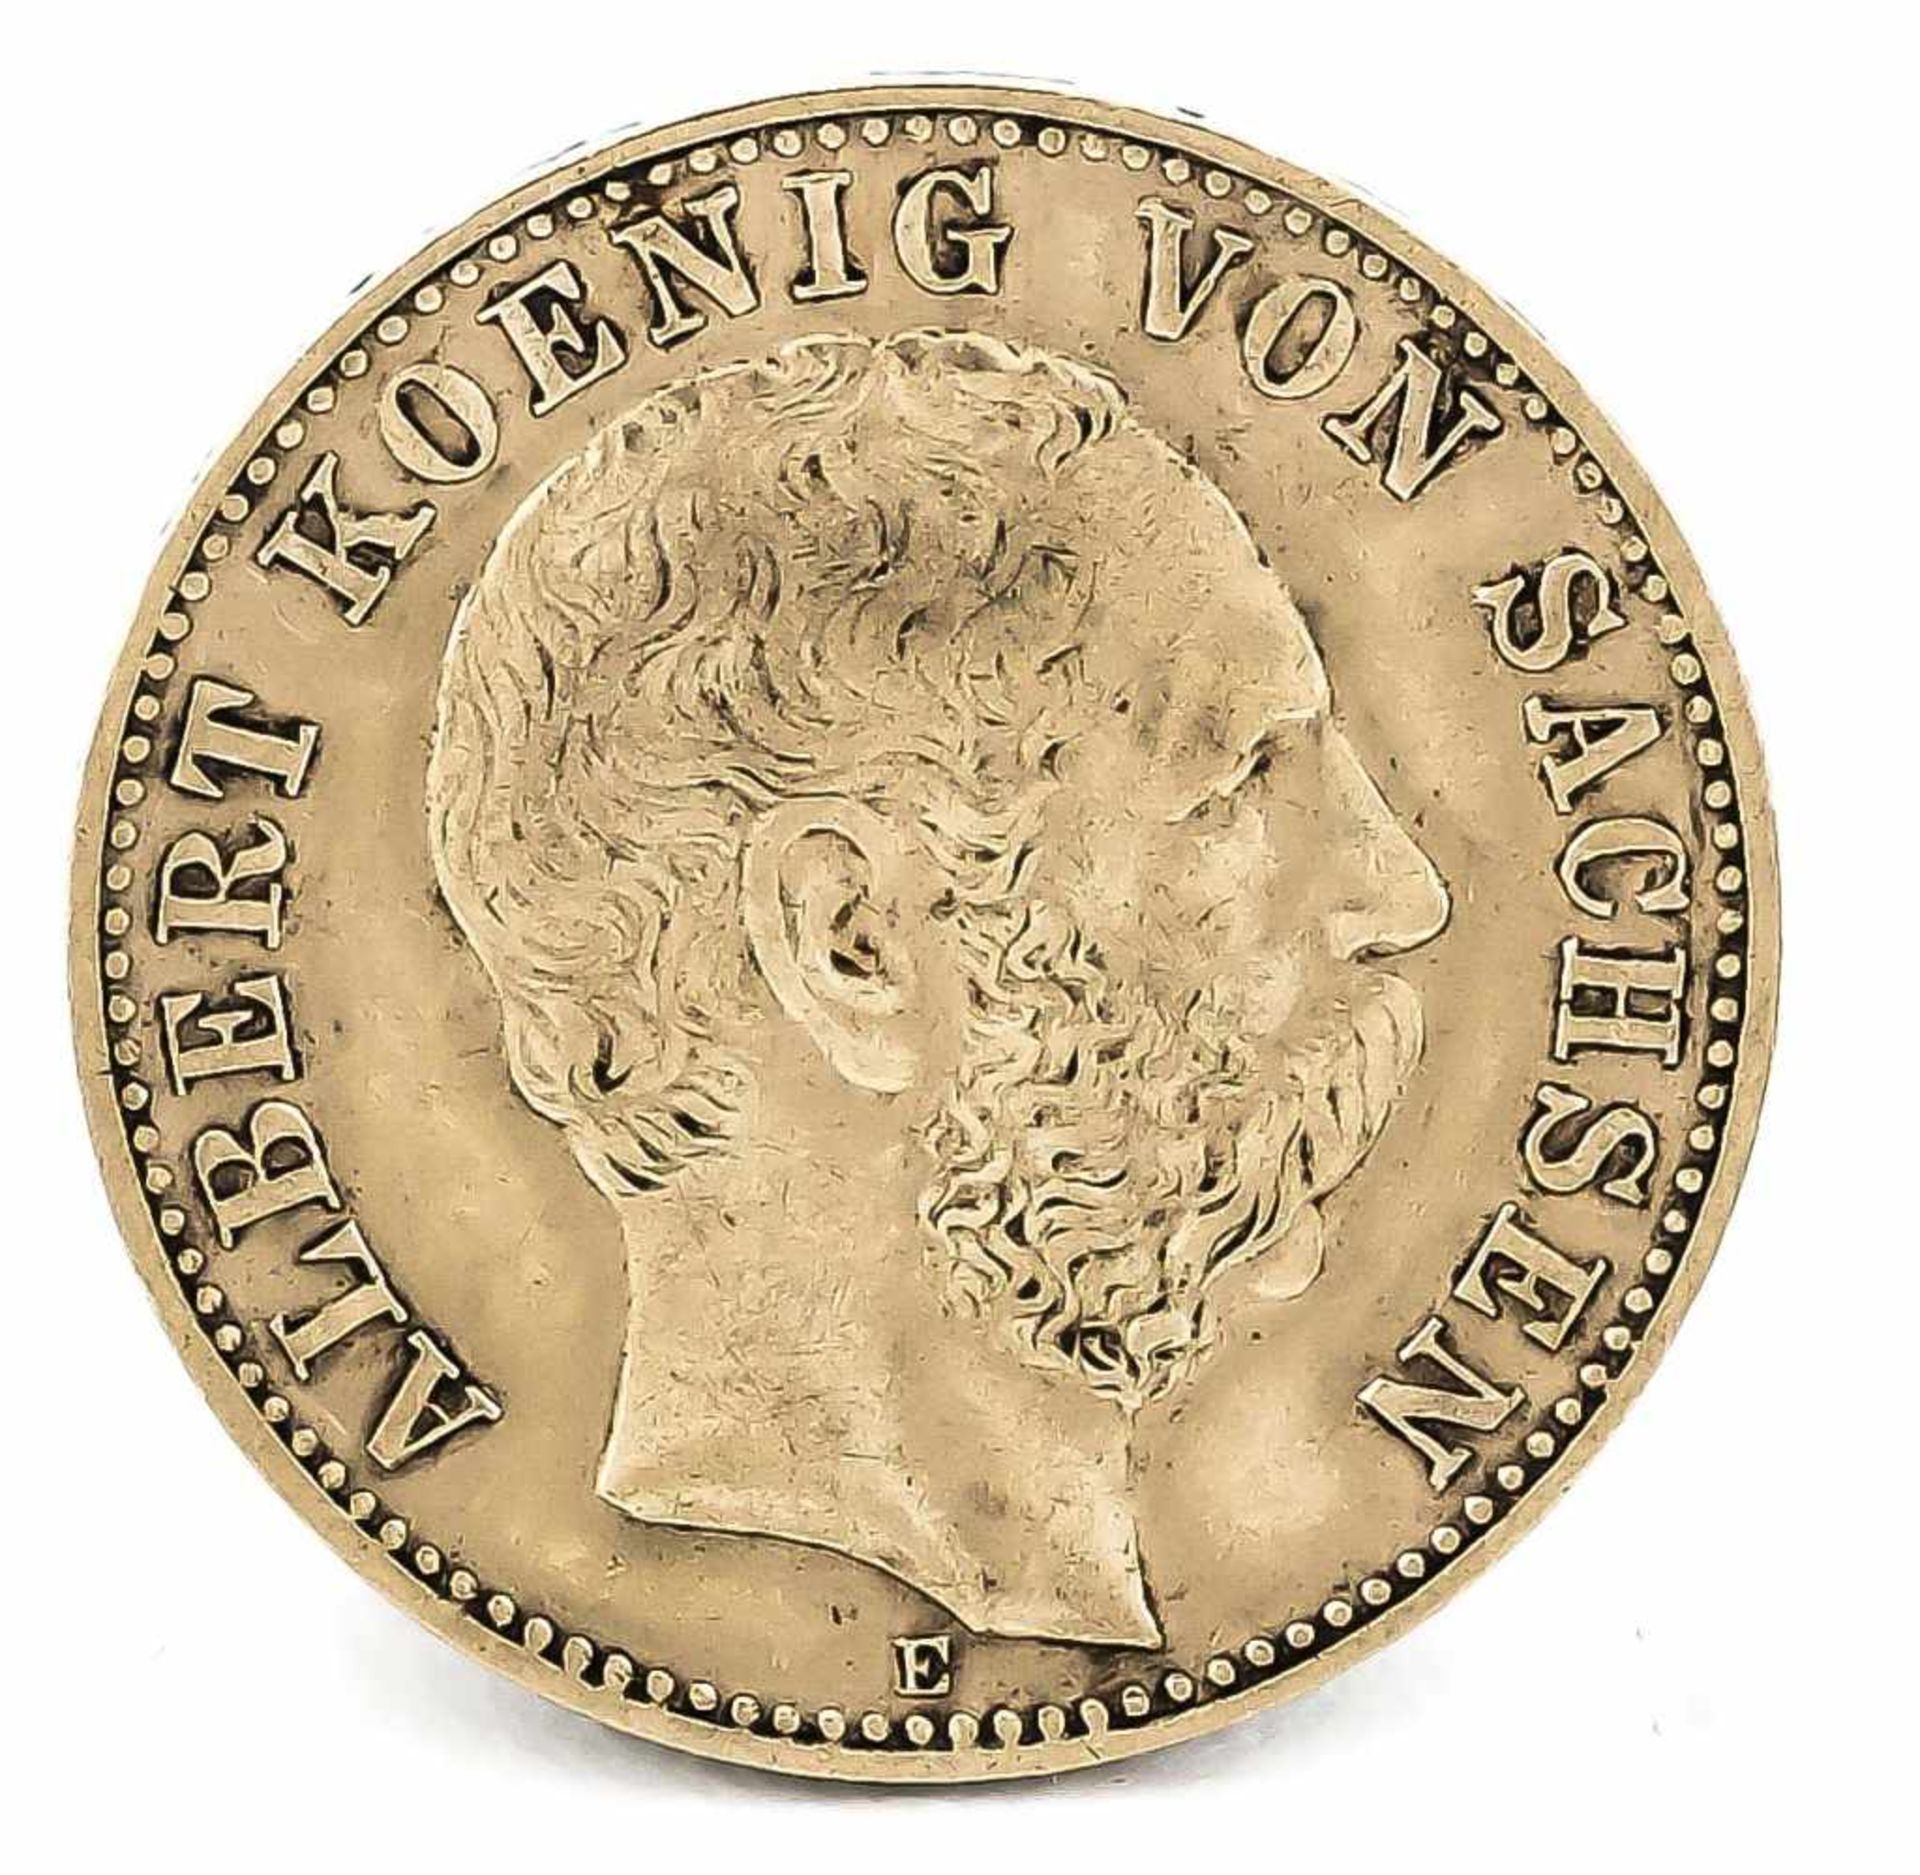 10 Mark, Sachsen, Albert König von Sachsen, 1891 E, in ss-vz